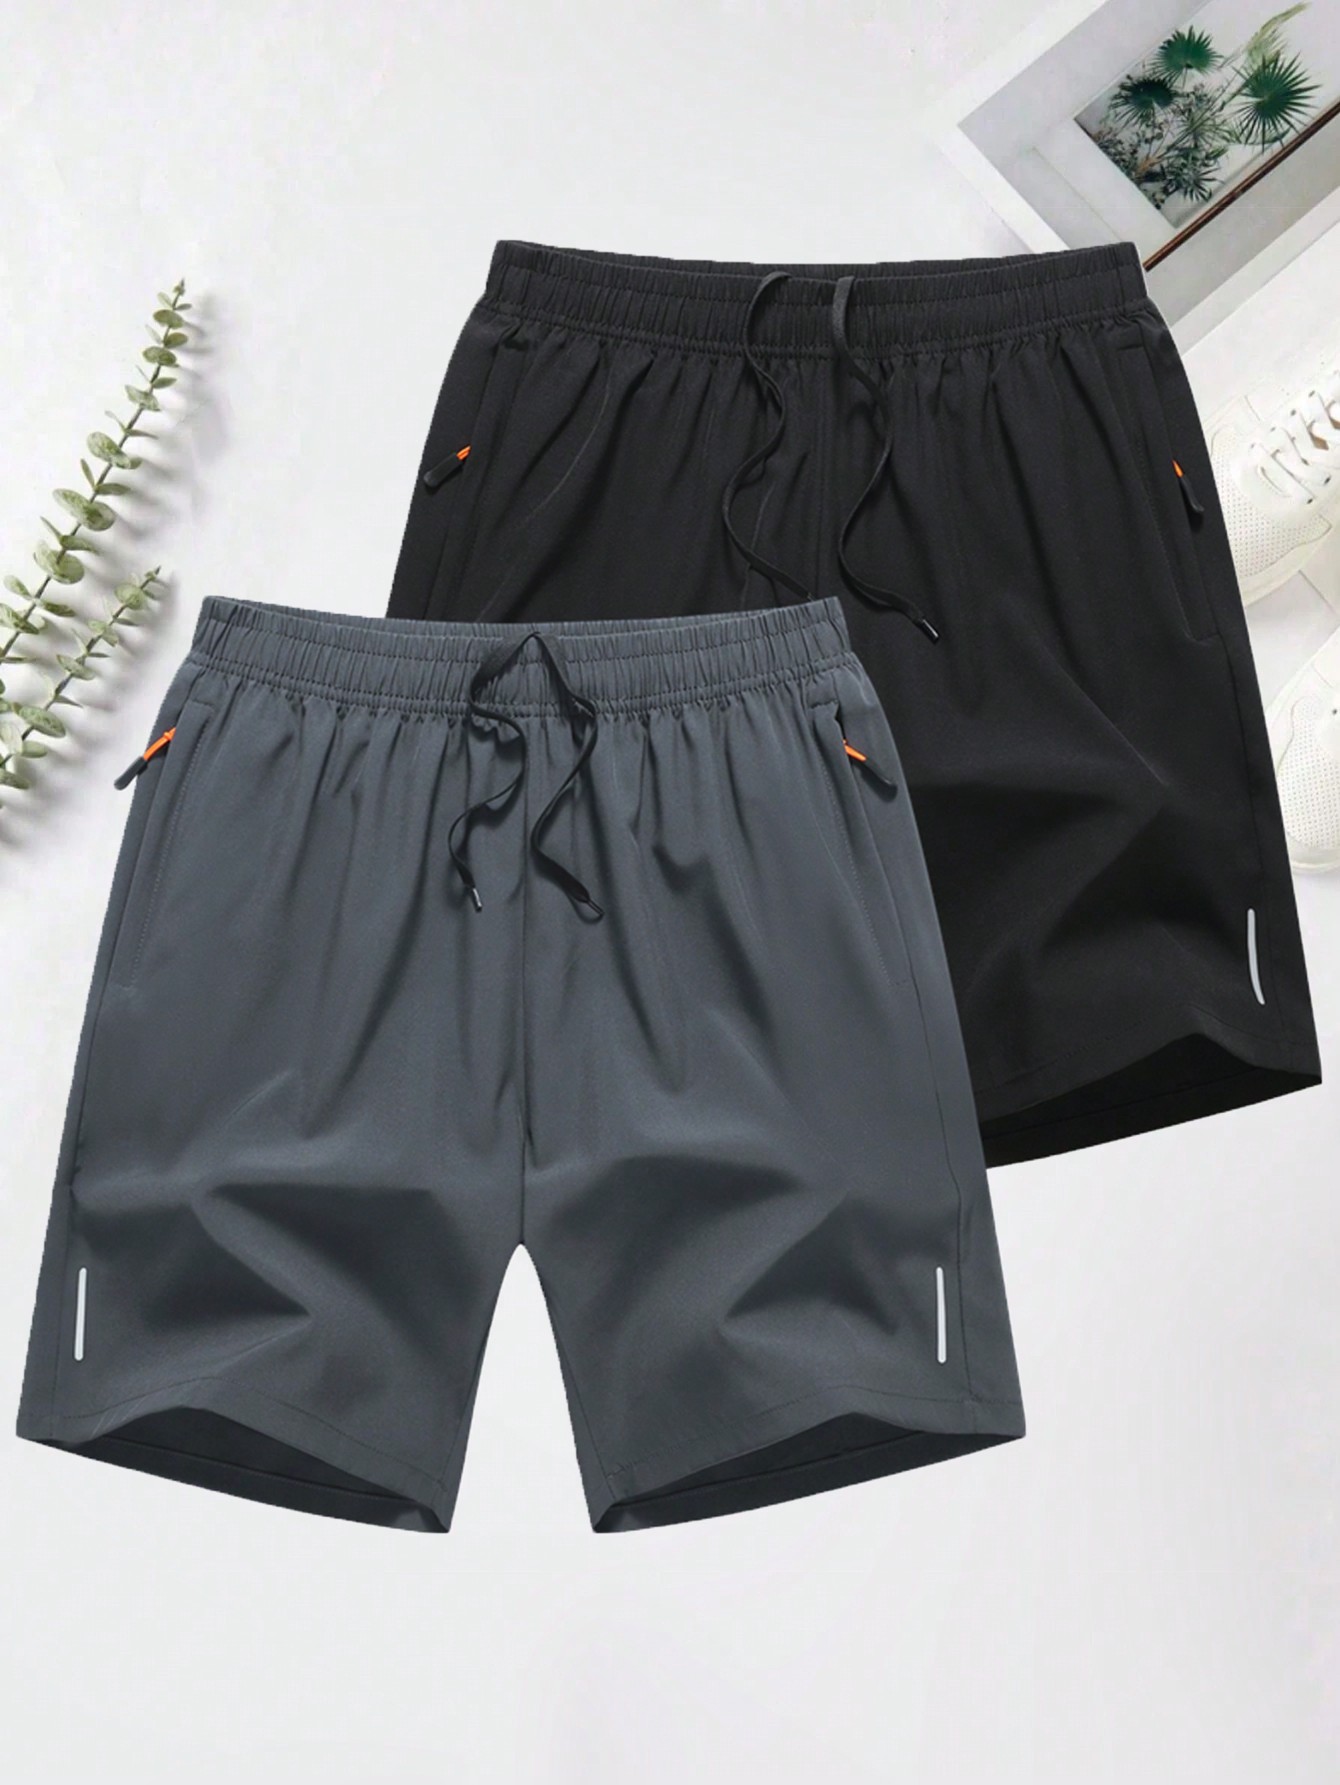 Мужские повседневные спортивные шорты с эластичной резинкой на талии, черный шорты мужские эйс серые размер 48